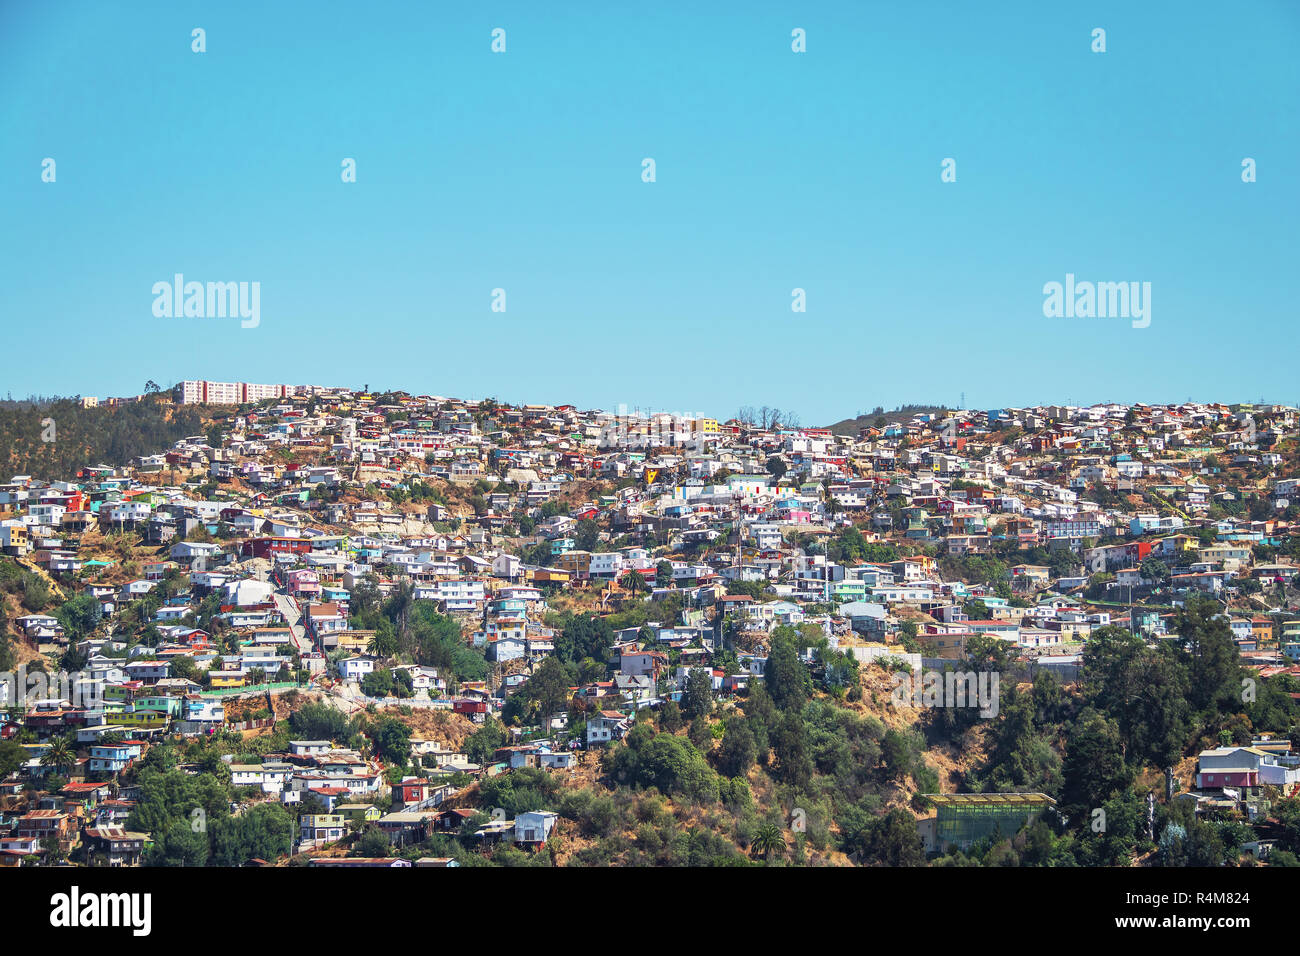 Houses of Valparaiso view from Cerro Polanco Hill - Valparaiso, Chile Stock Photo